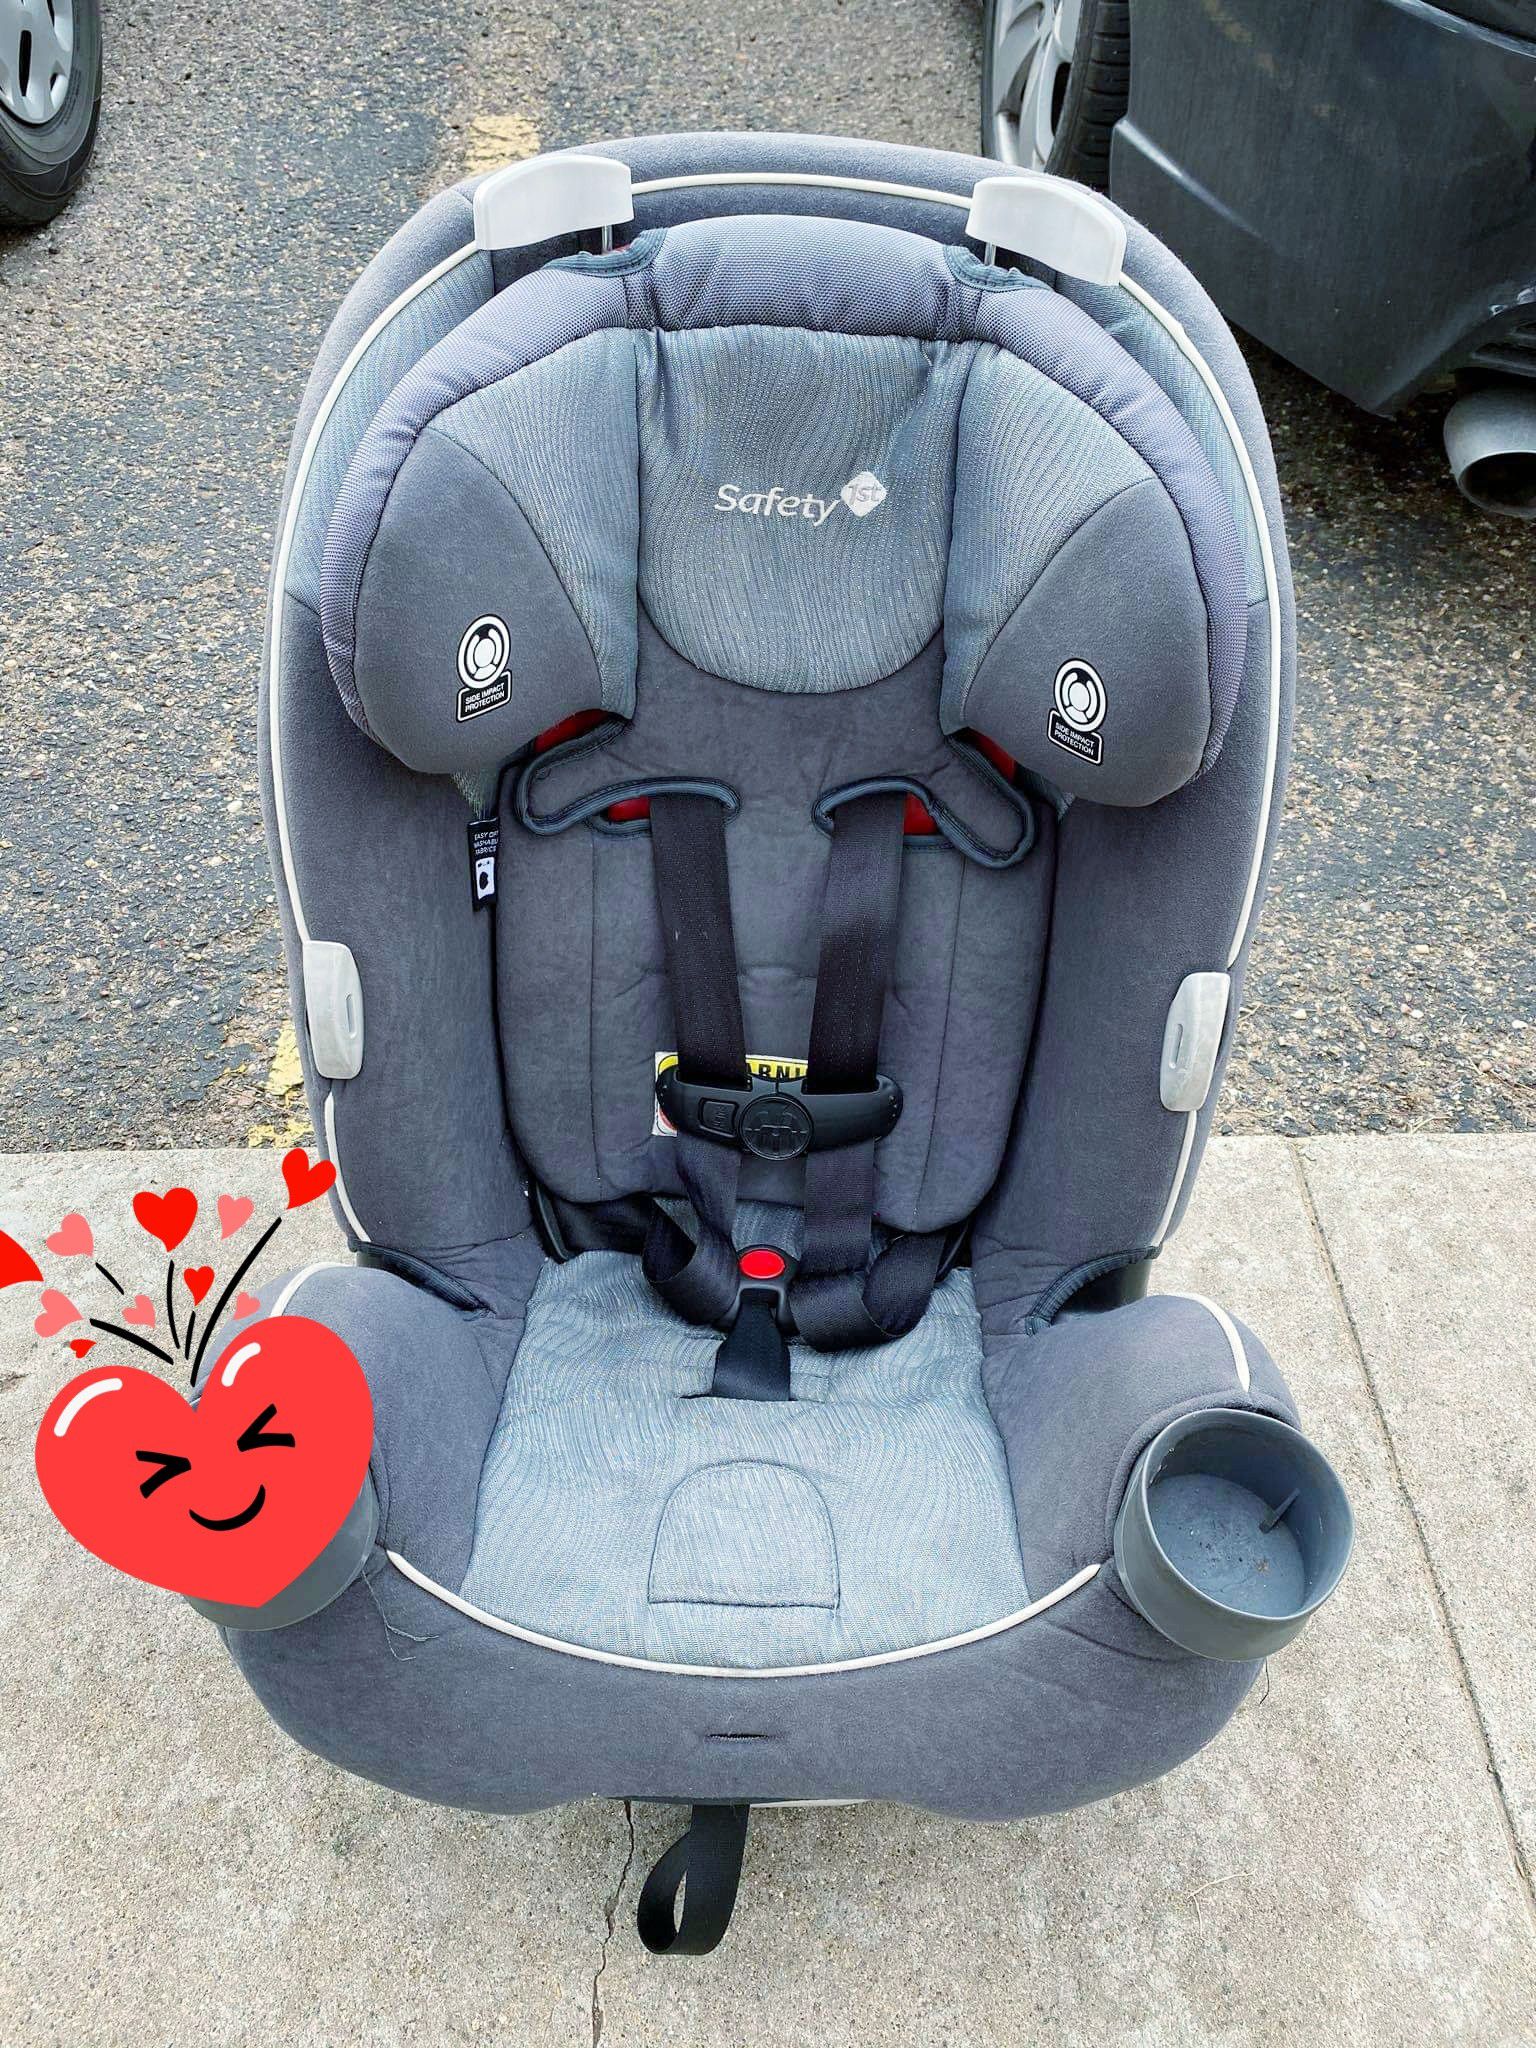 Toddler Car seat